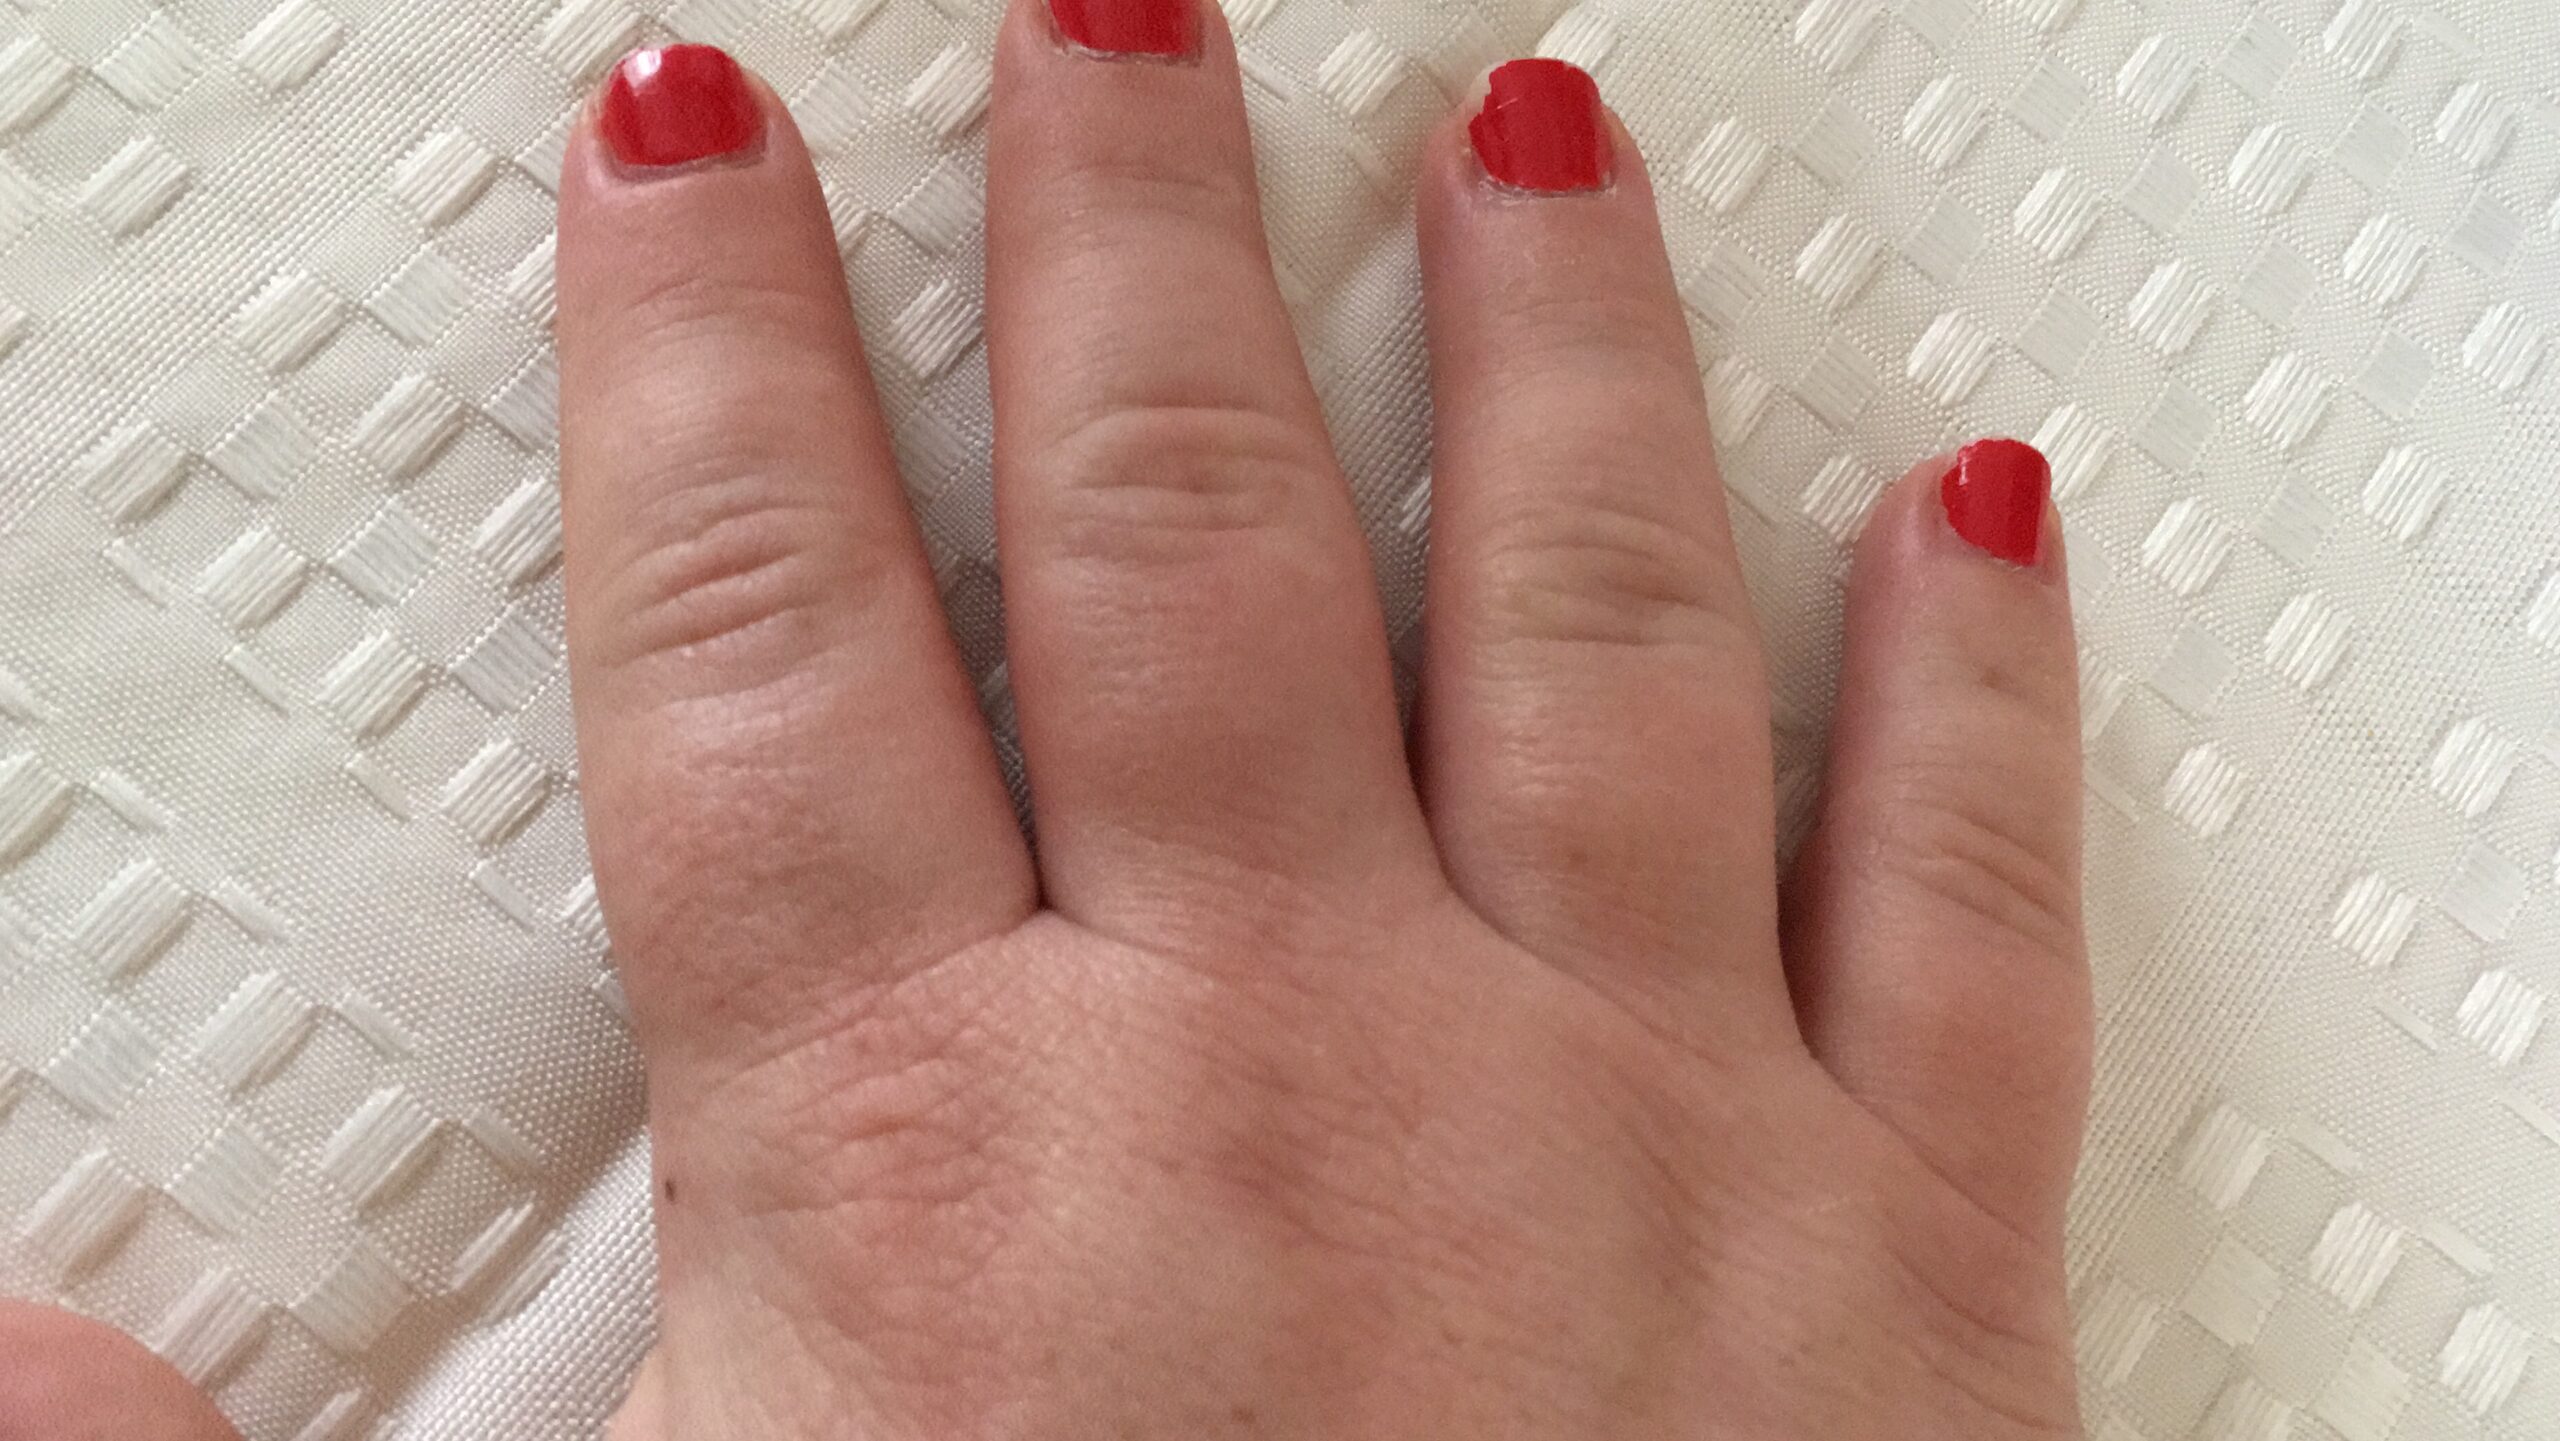 Swollen fingers